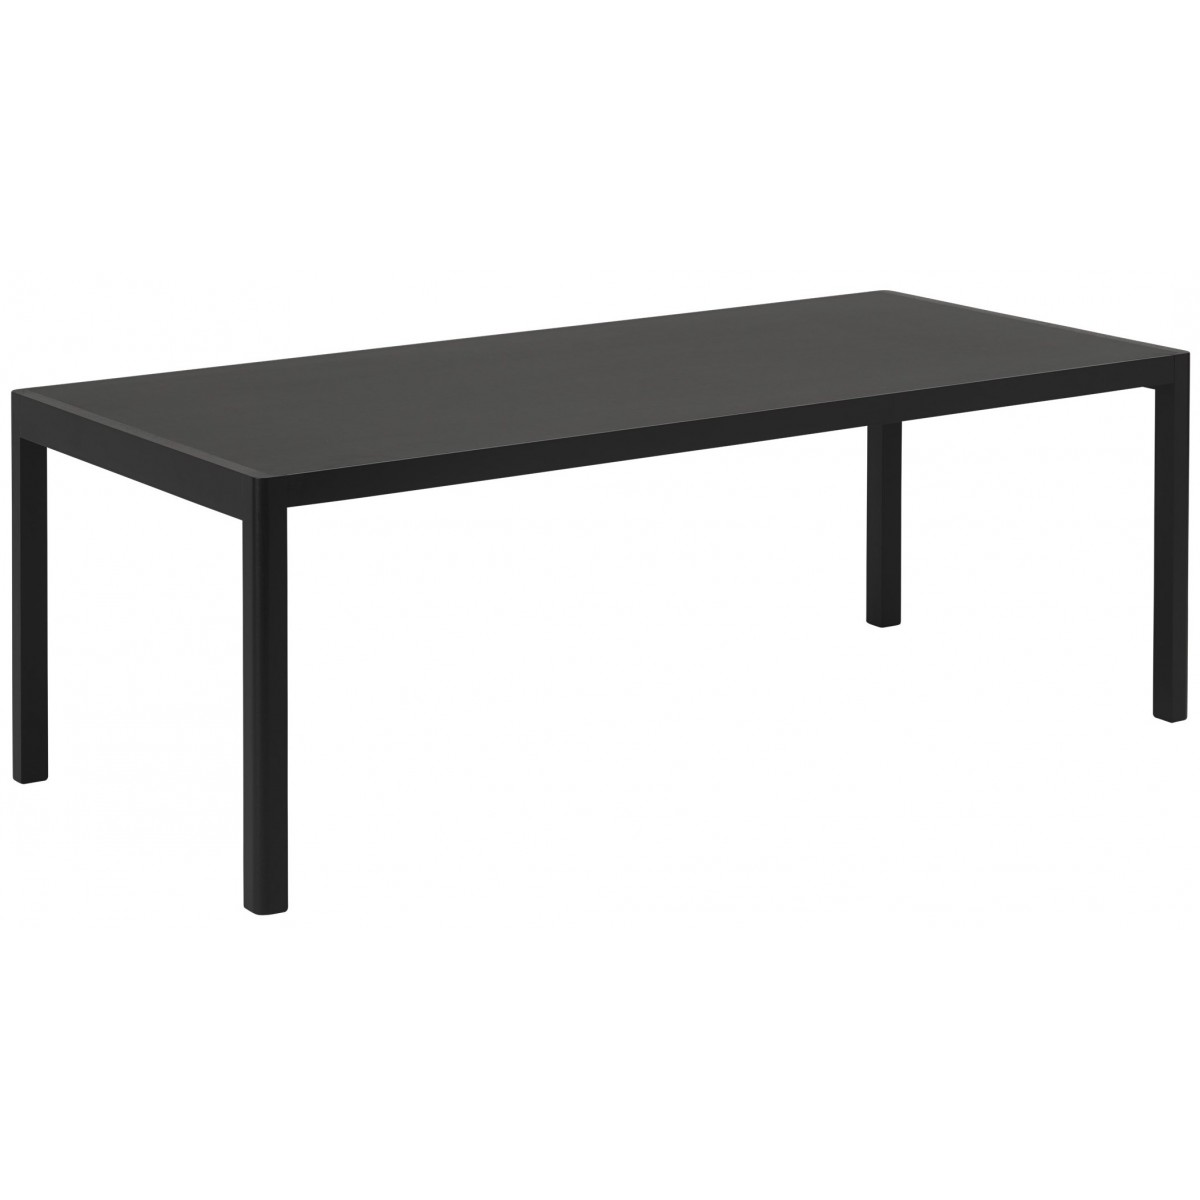 200 x 92 cm – plateau linoléum noir + base noire – Table Workshop